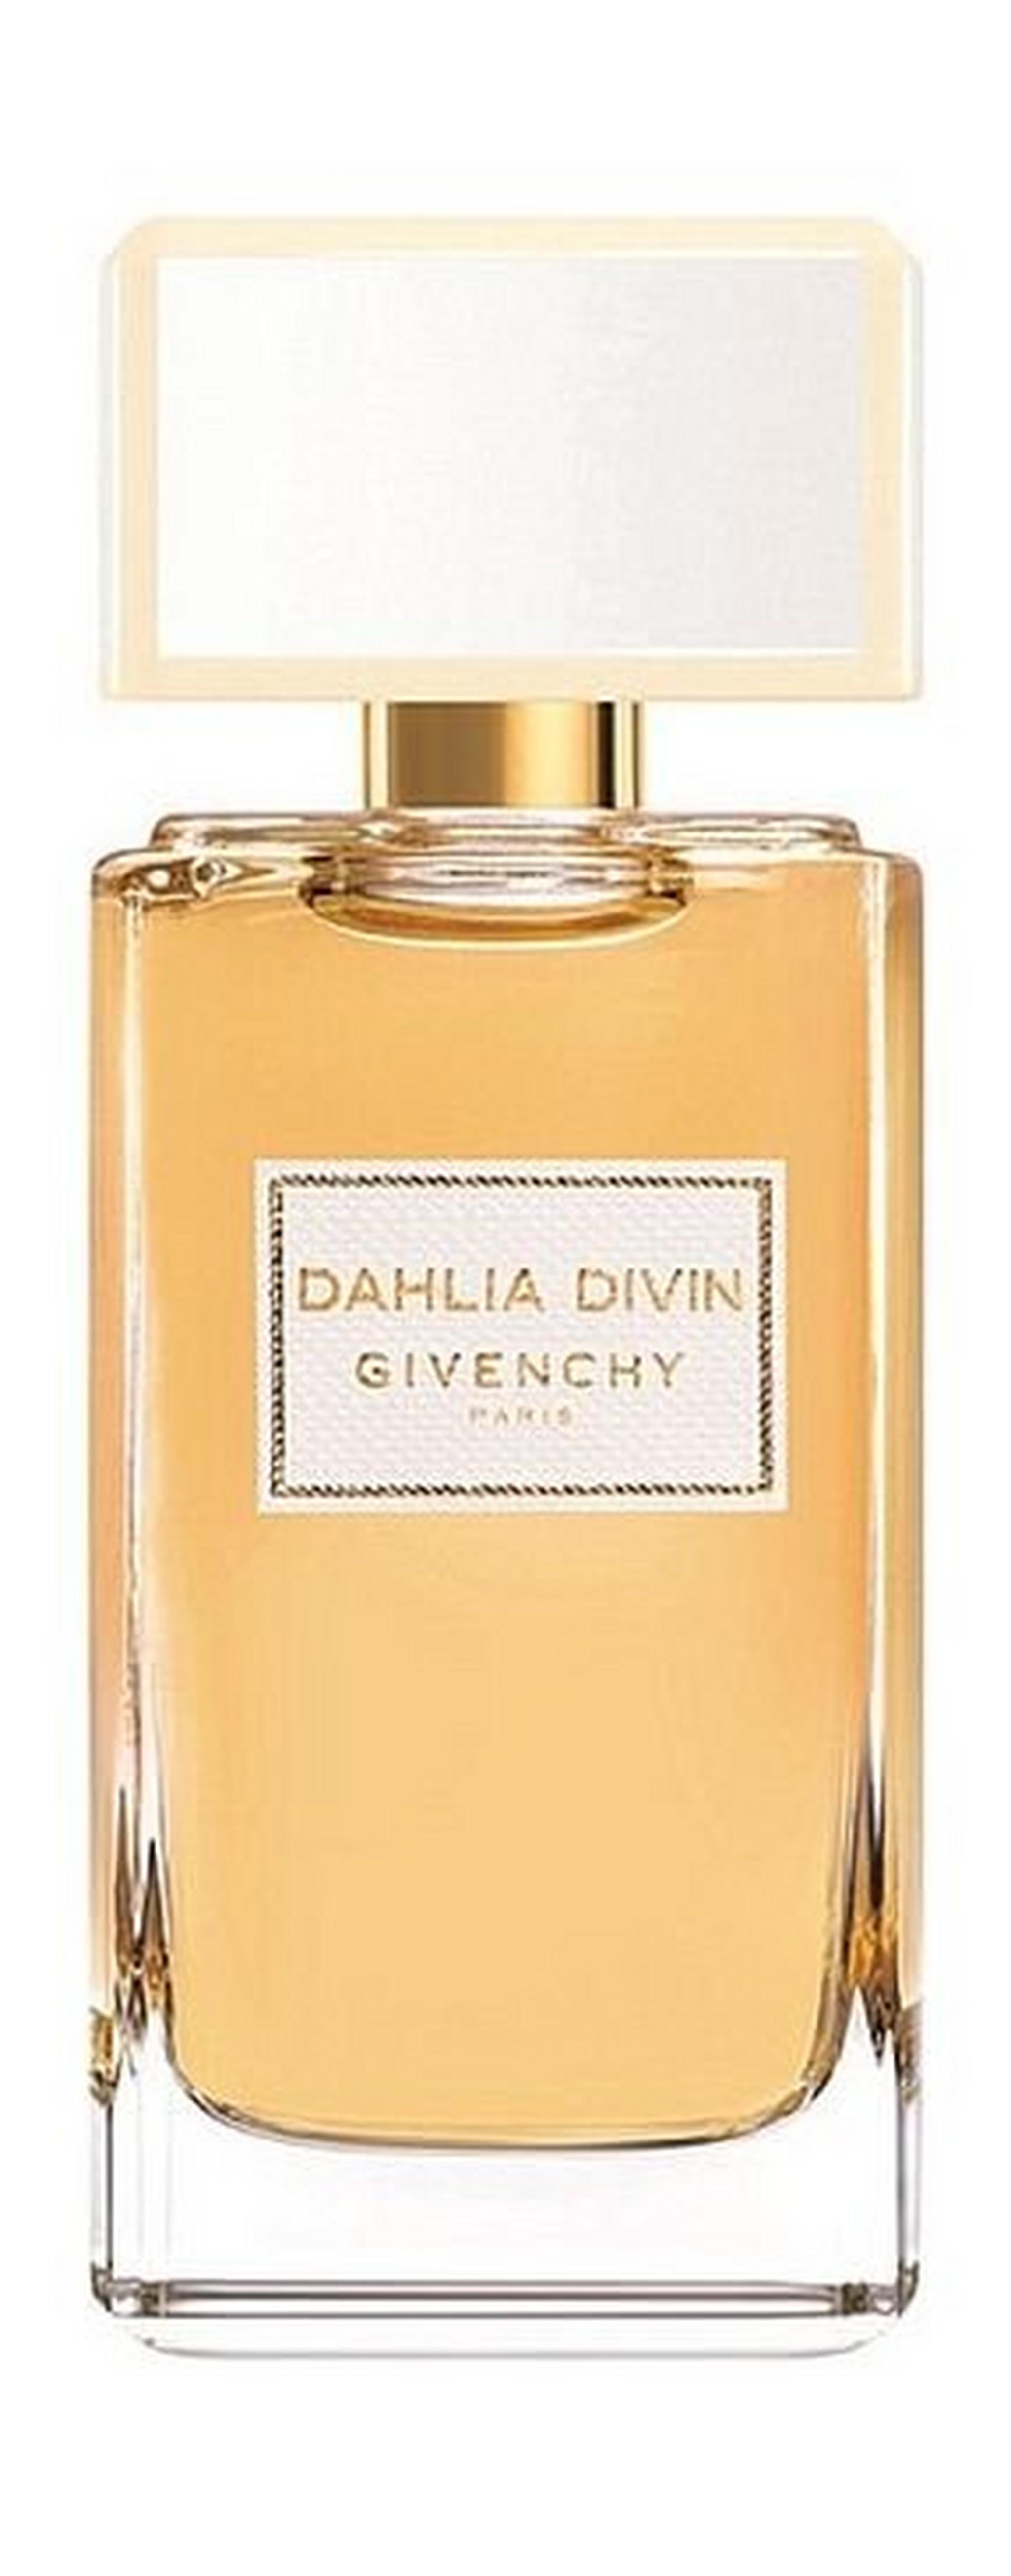 Givenchy Dahlia Divin For Women 75 ml Eau de Parfum